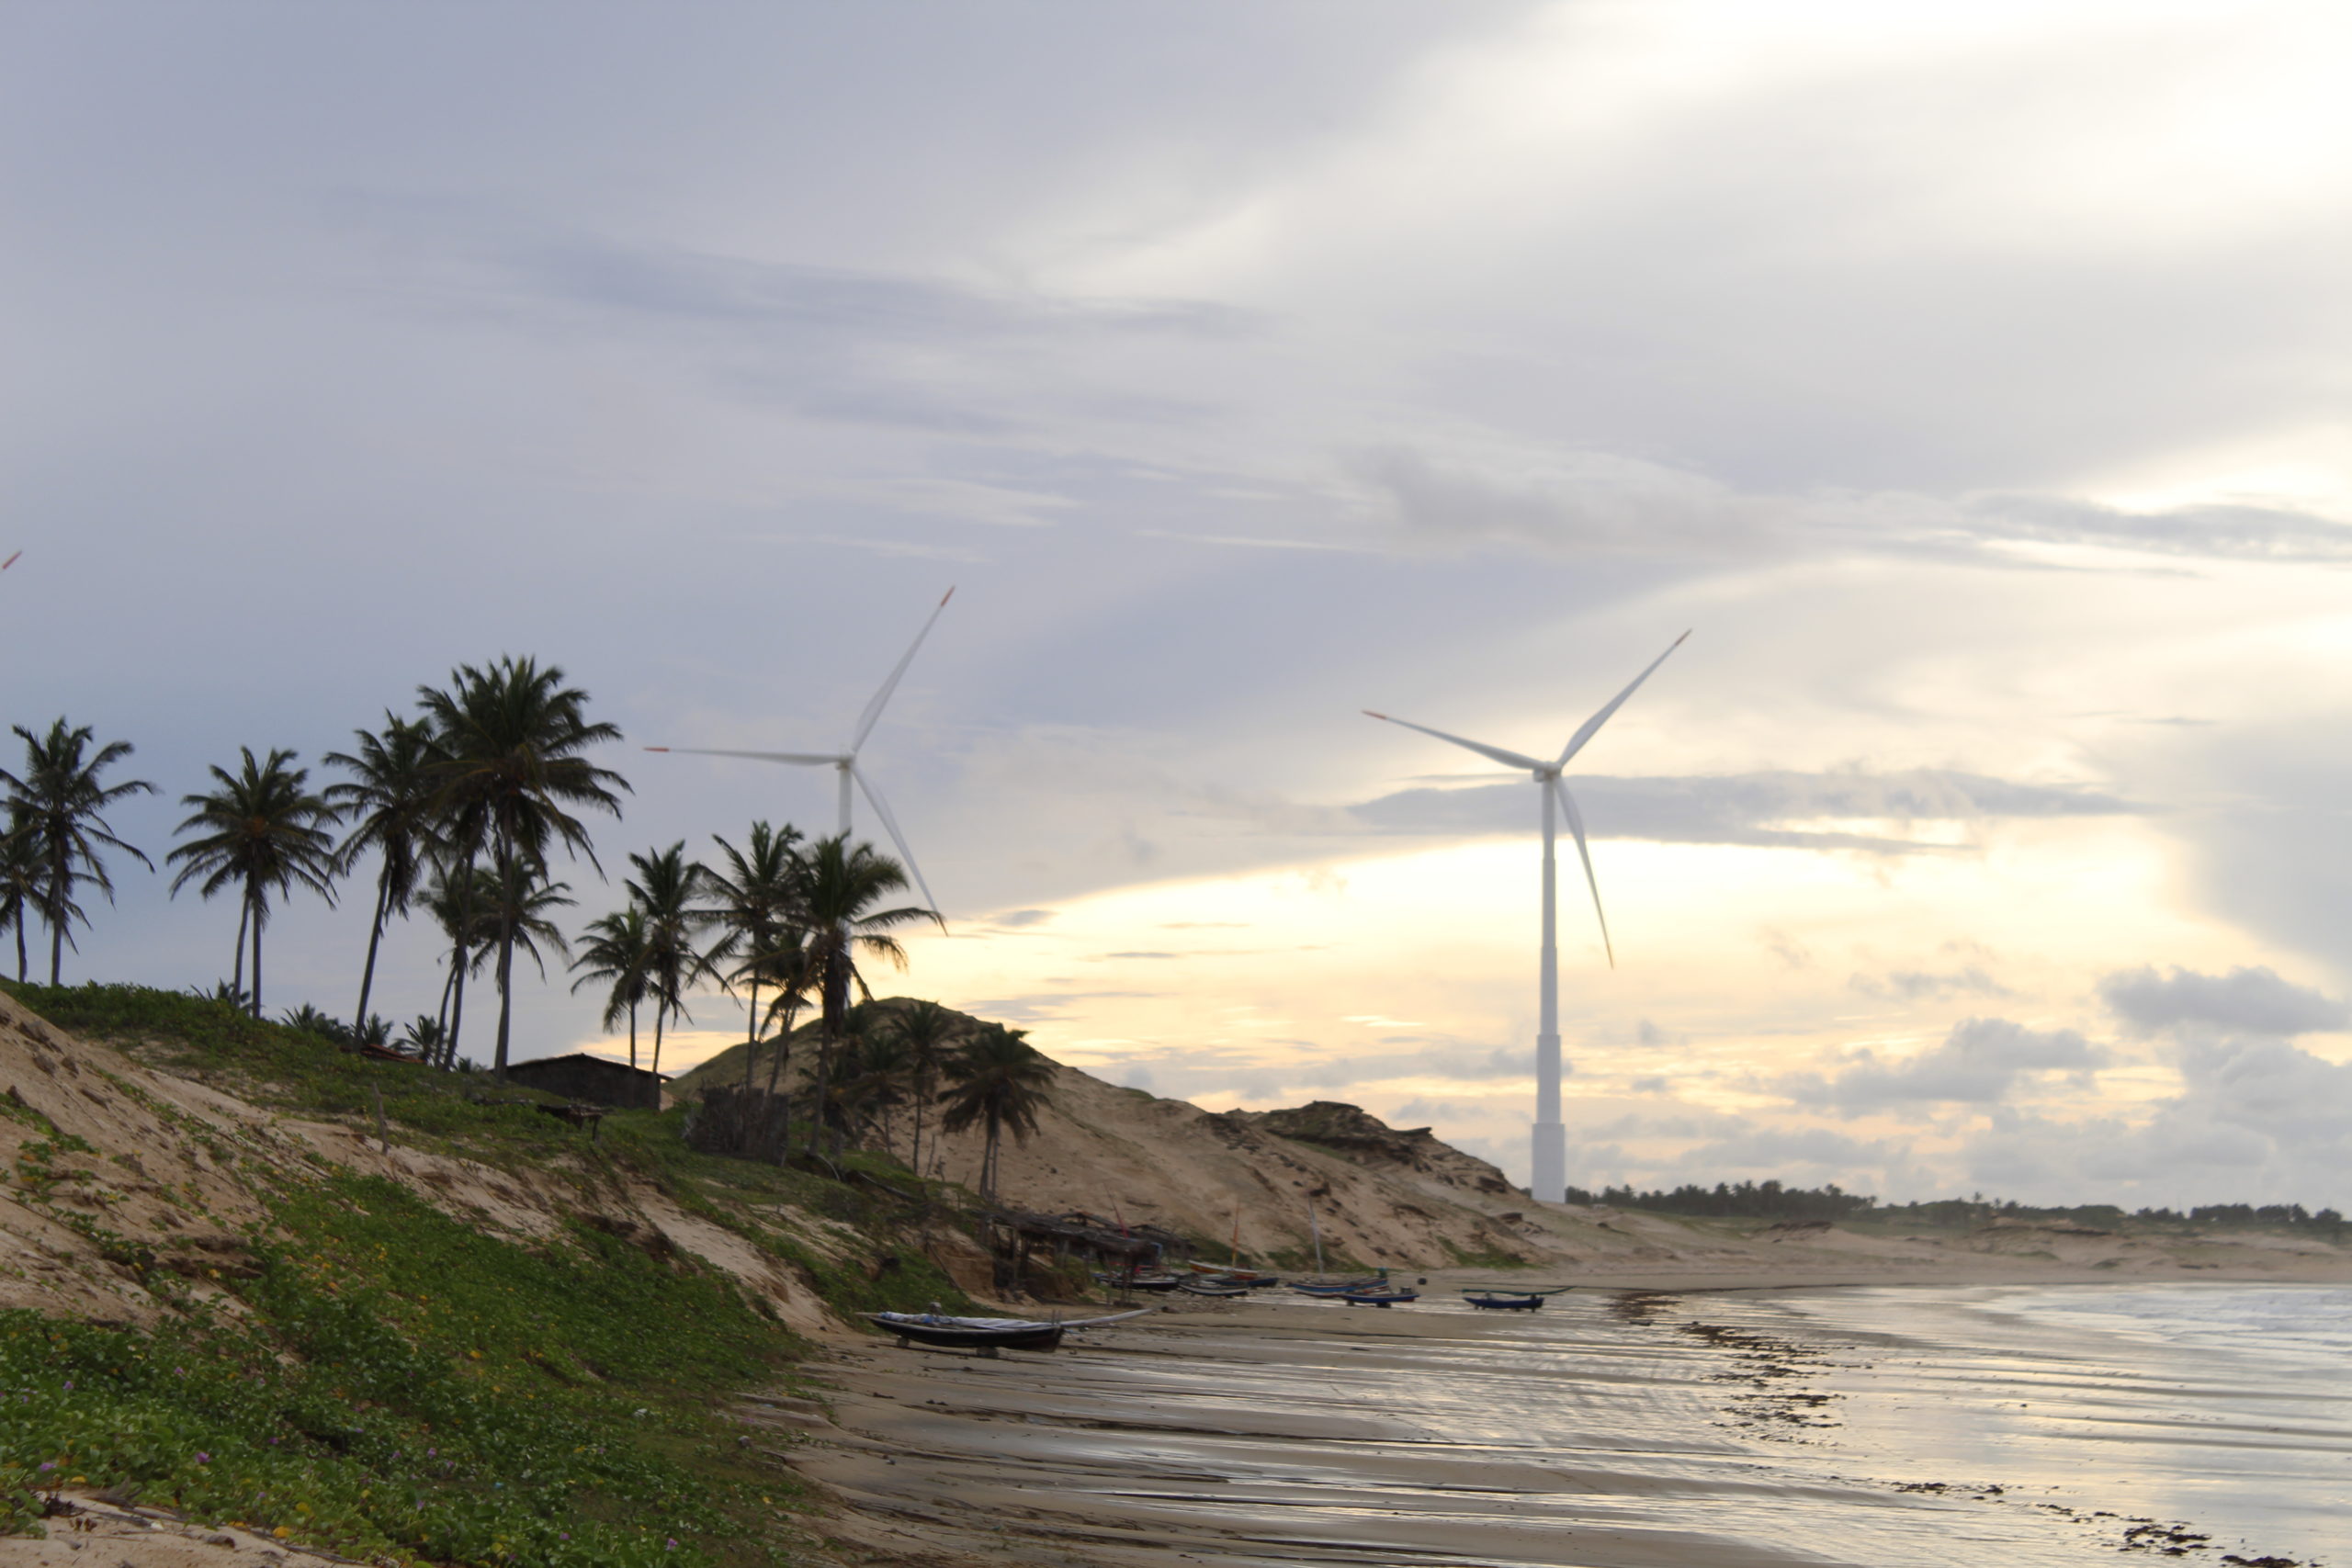 Parque eólico instalado no litoral cearense: comunidades locais 